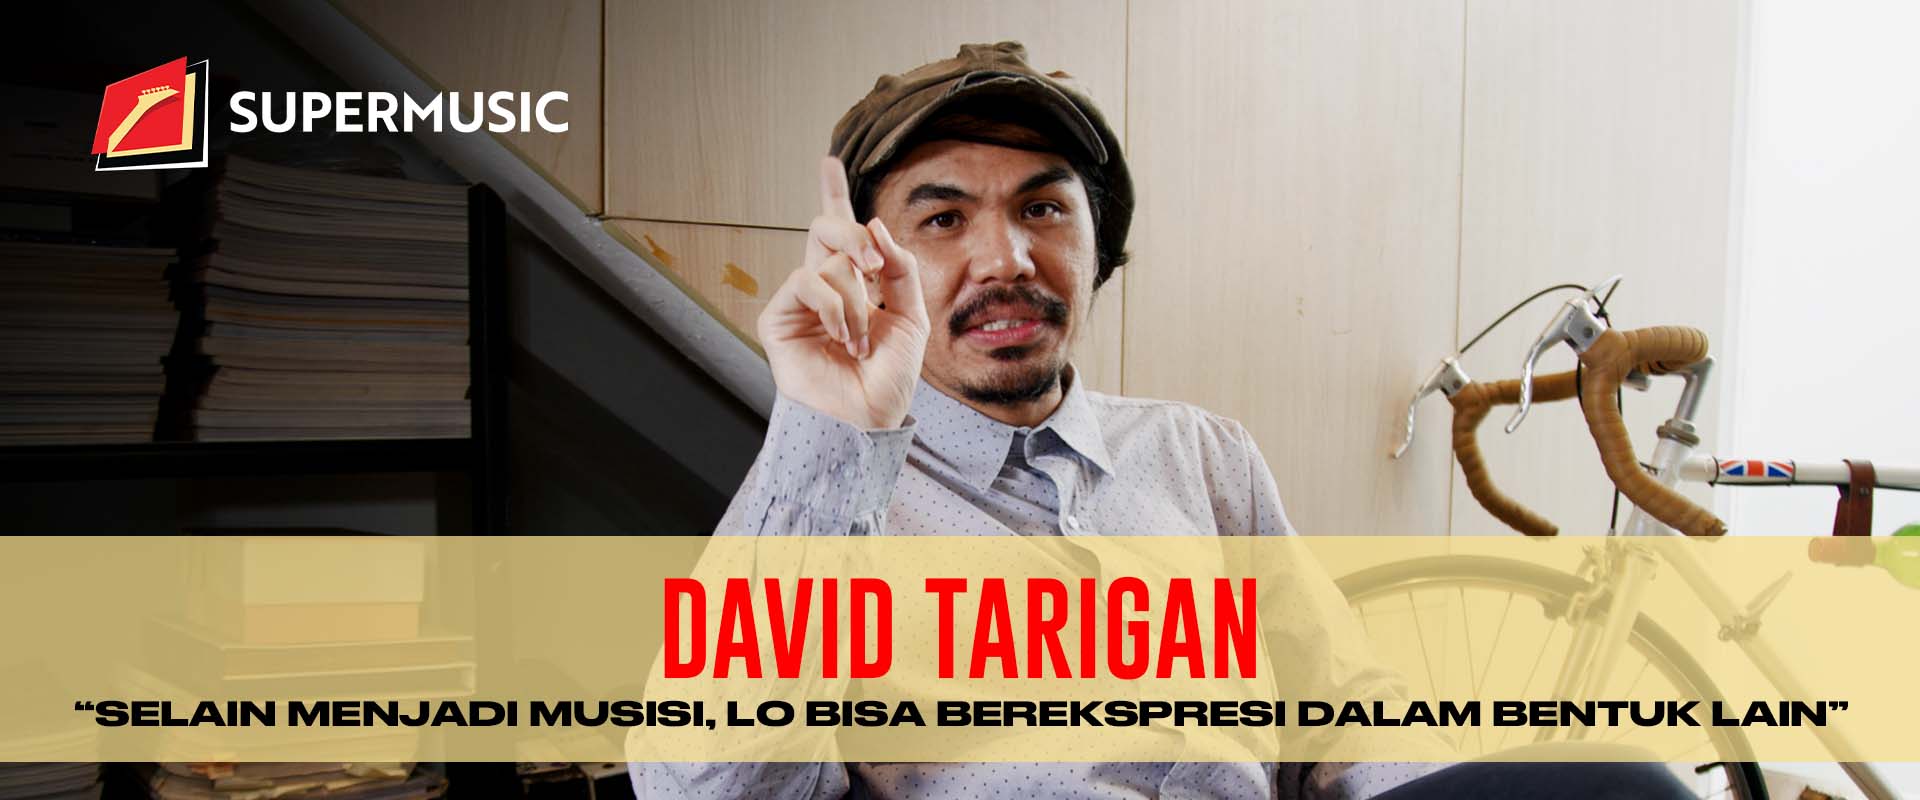 SUPERMUSIC – David Tarigan "Selain Menjadi Musisi, Lo Bisa Berekspresi Dalam Bentuk Lain"